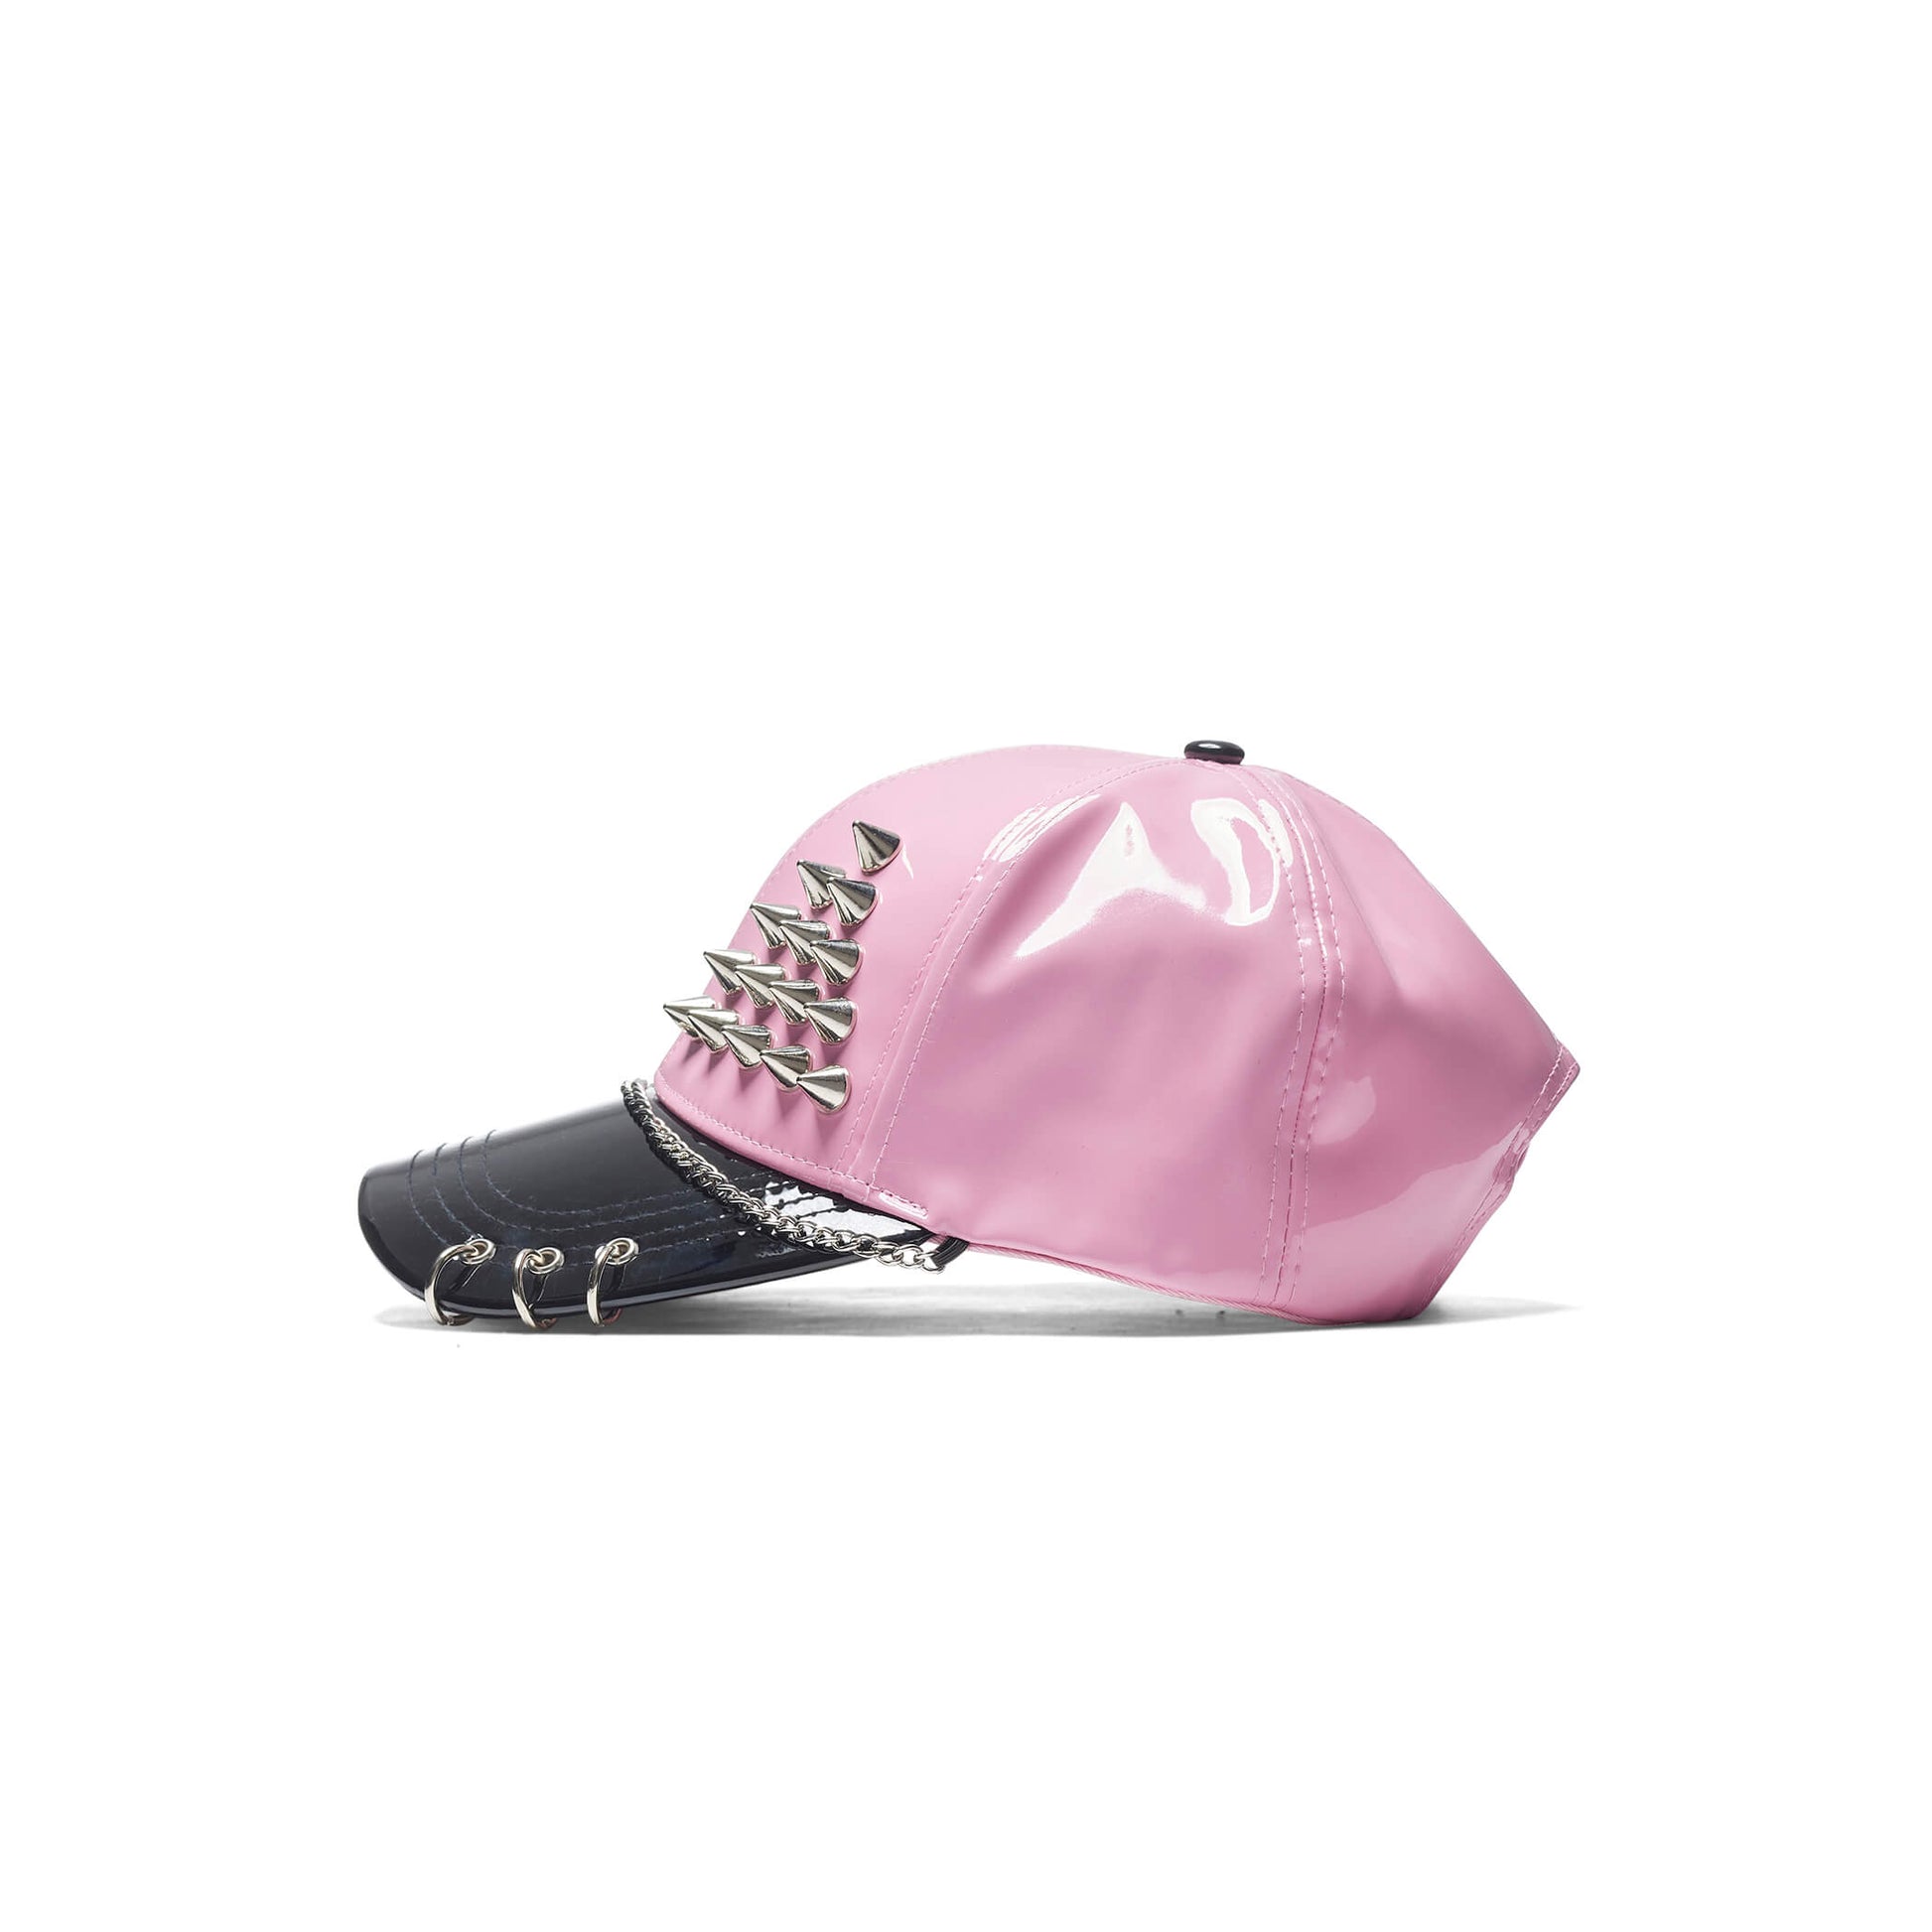 Malevolent Grunge Pink Cap - Accessories - KOI Footwear - Pink - Side View